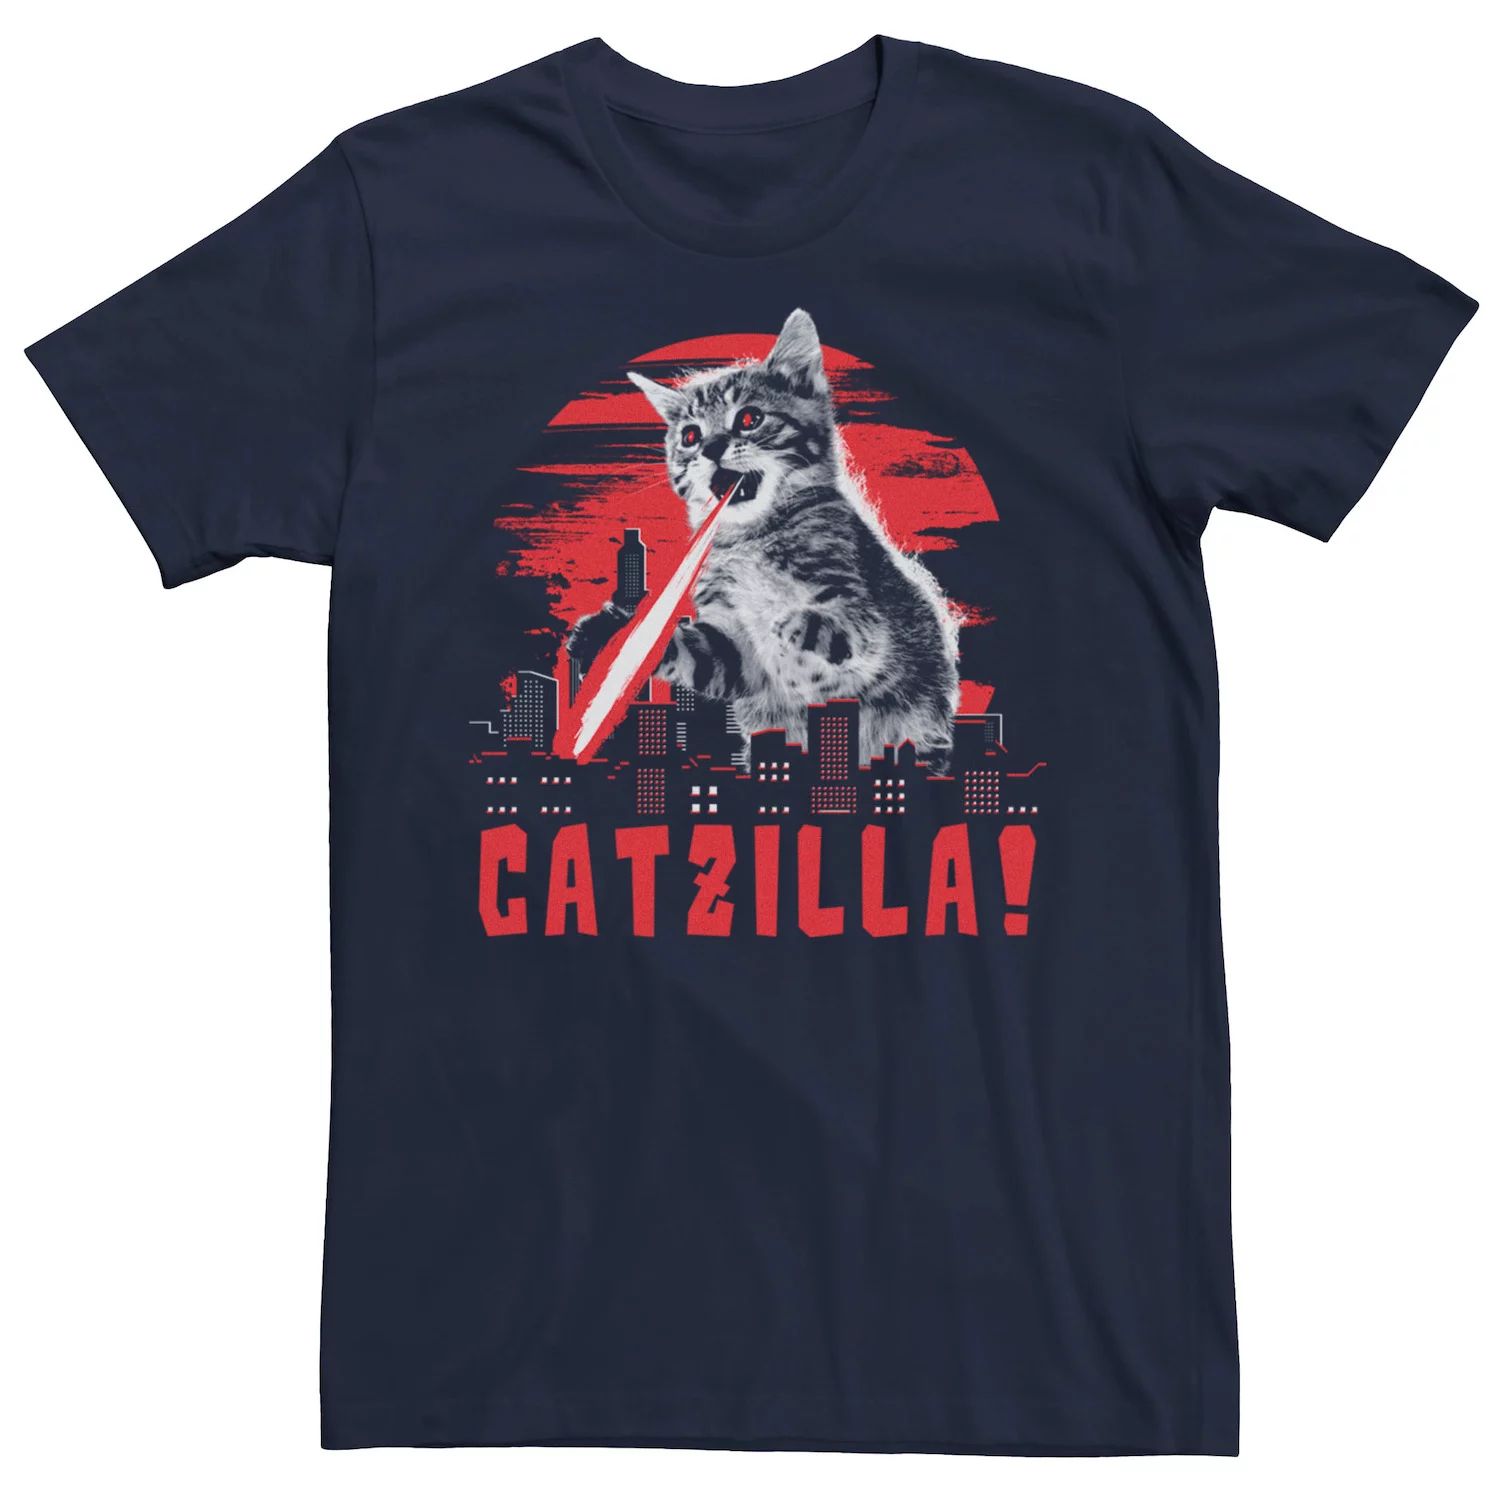 Мужская футболка с рисунком Catzilla Licensed Character, синий